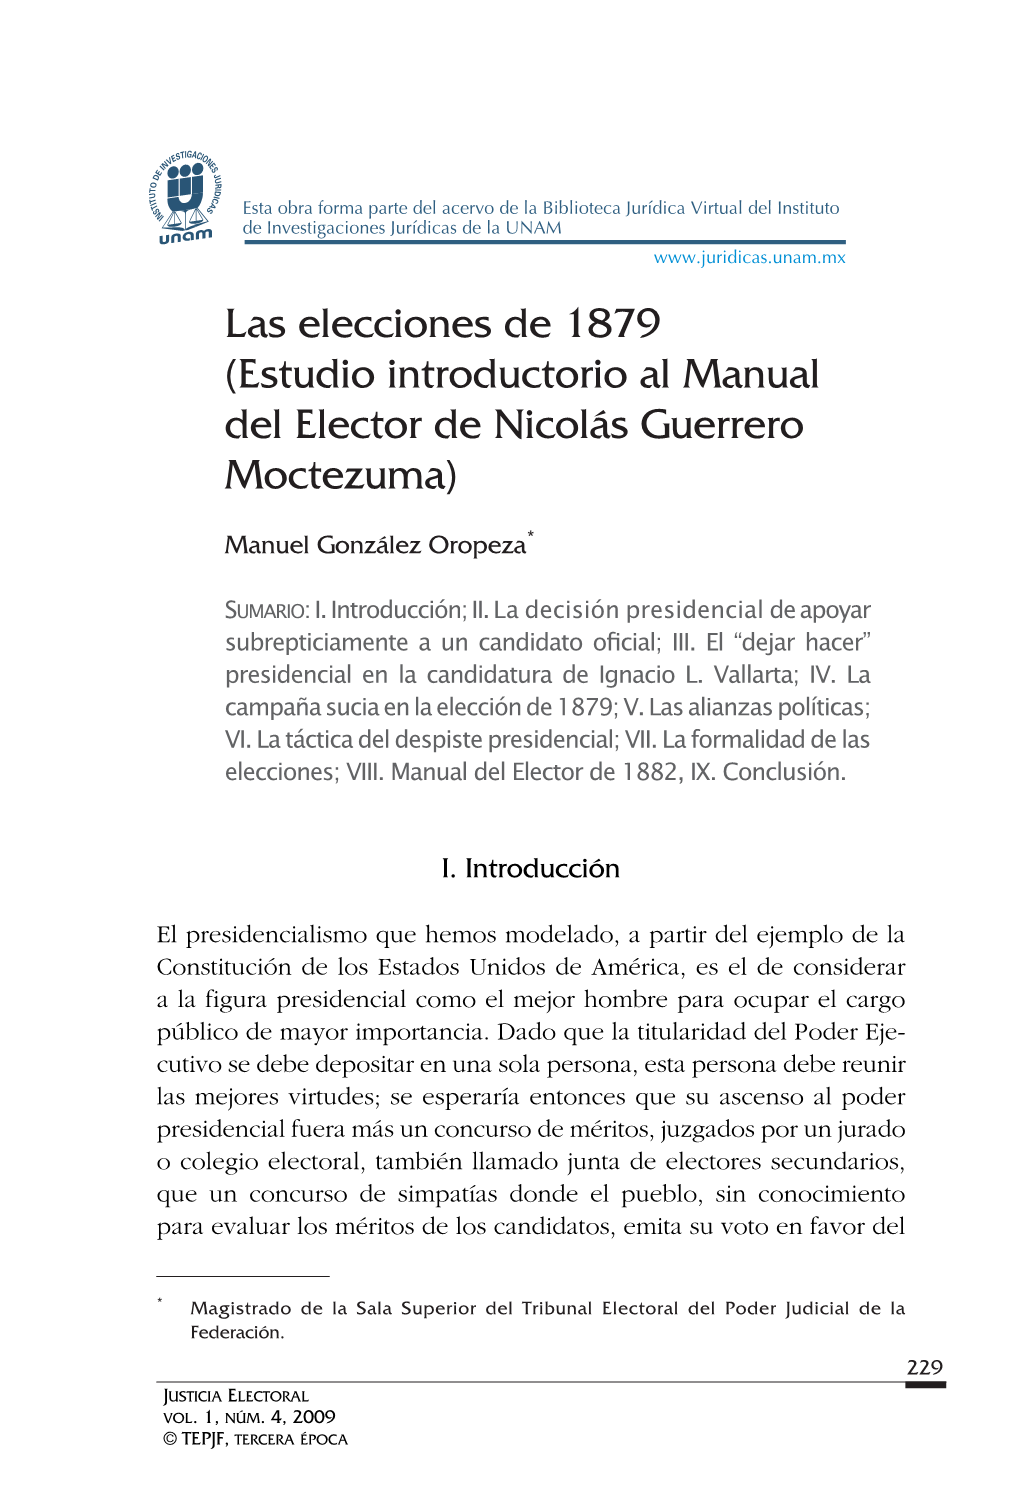 Las Elecciones De 1879 (Estudio Introductorio Al Manual Del Elector De Nicolás Guerrero Moctezuma)